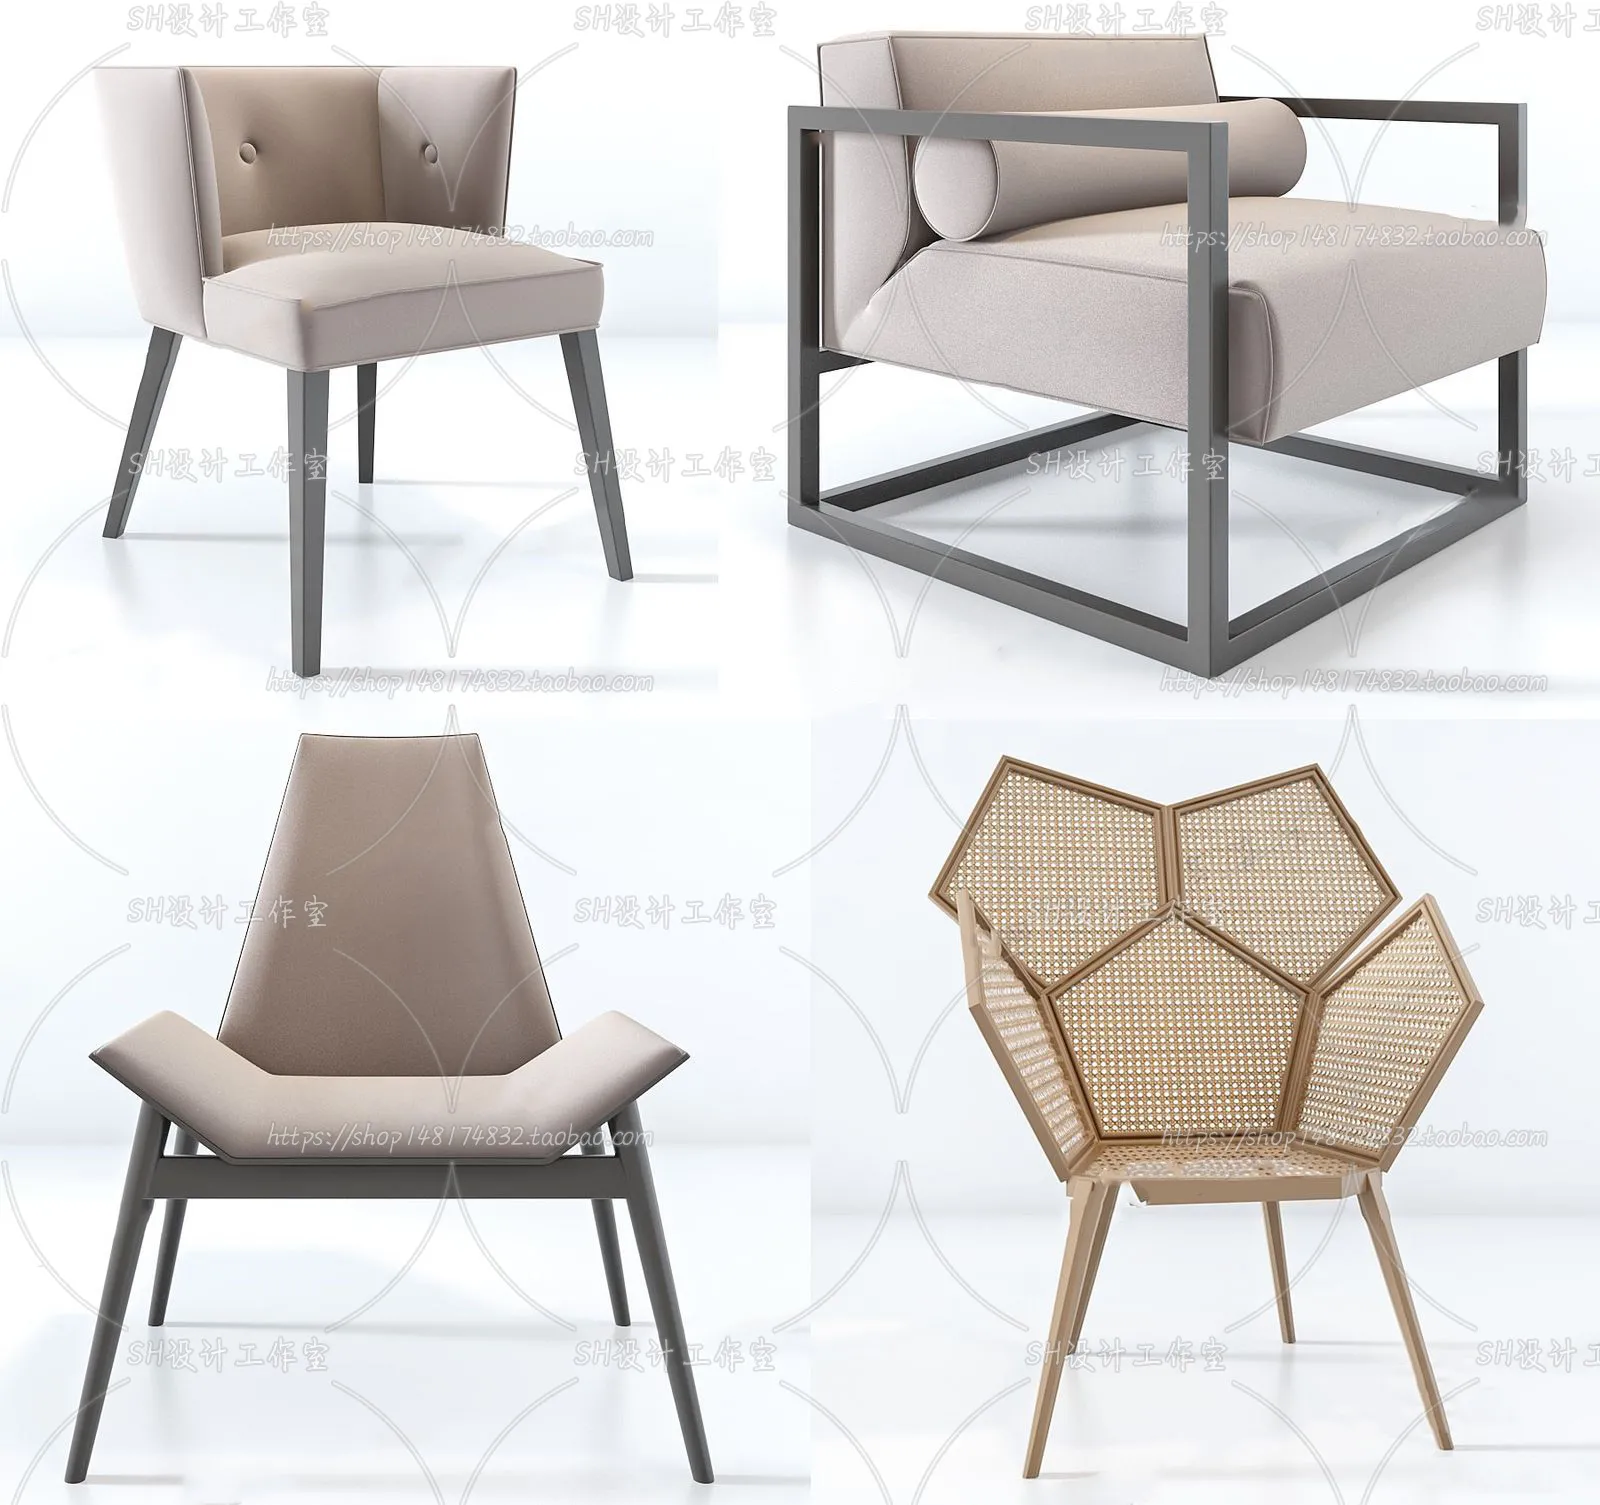 Chair – Single Chair 3D Models – 1974